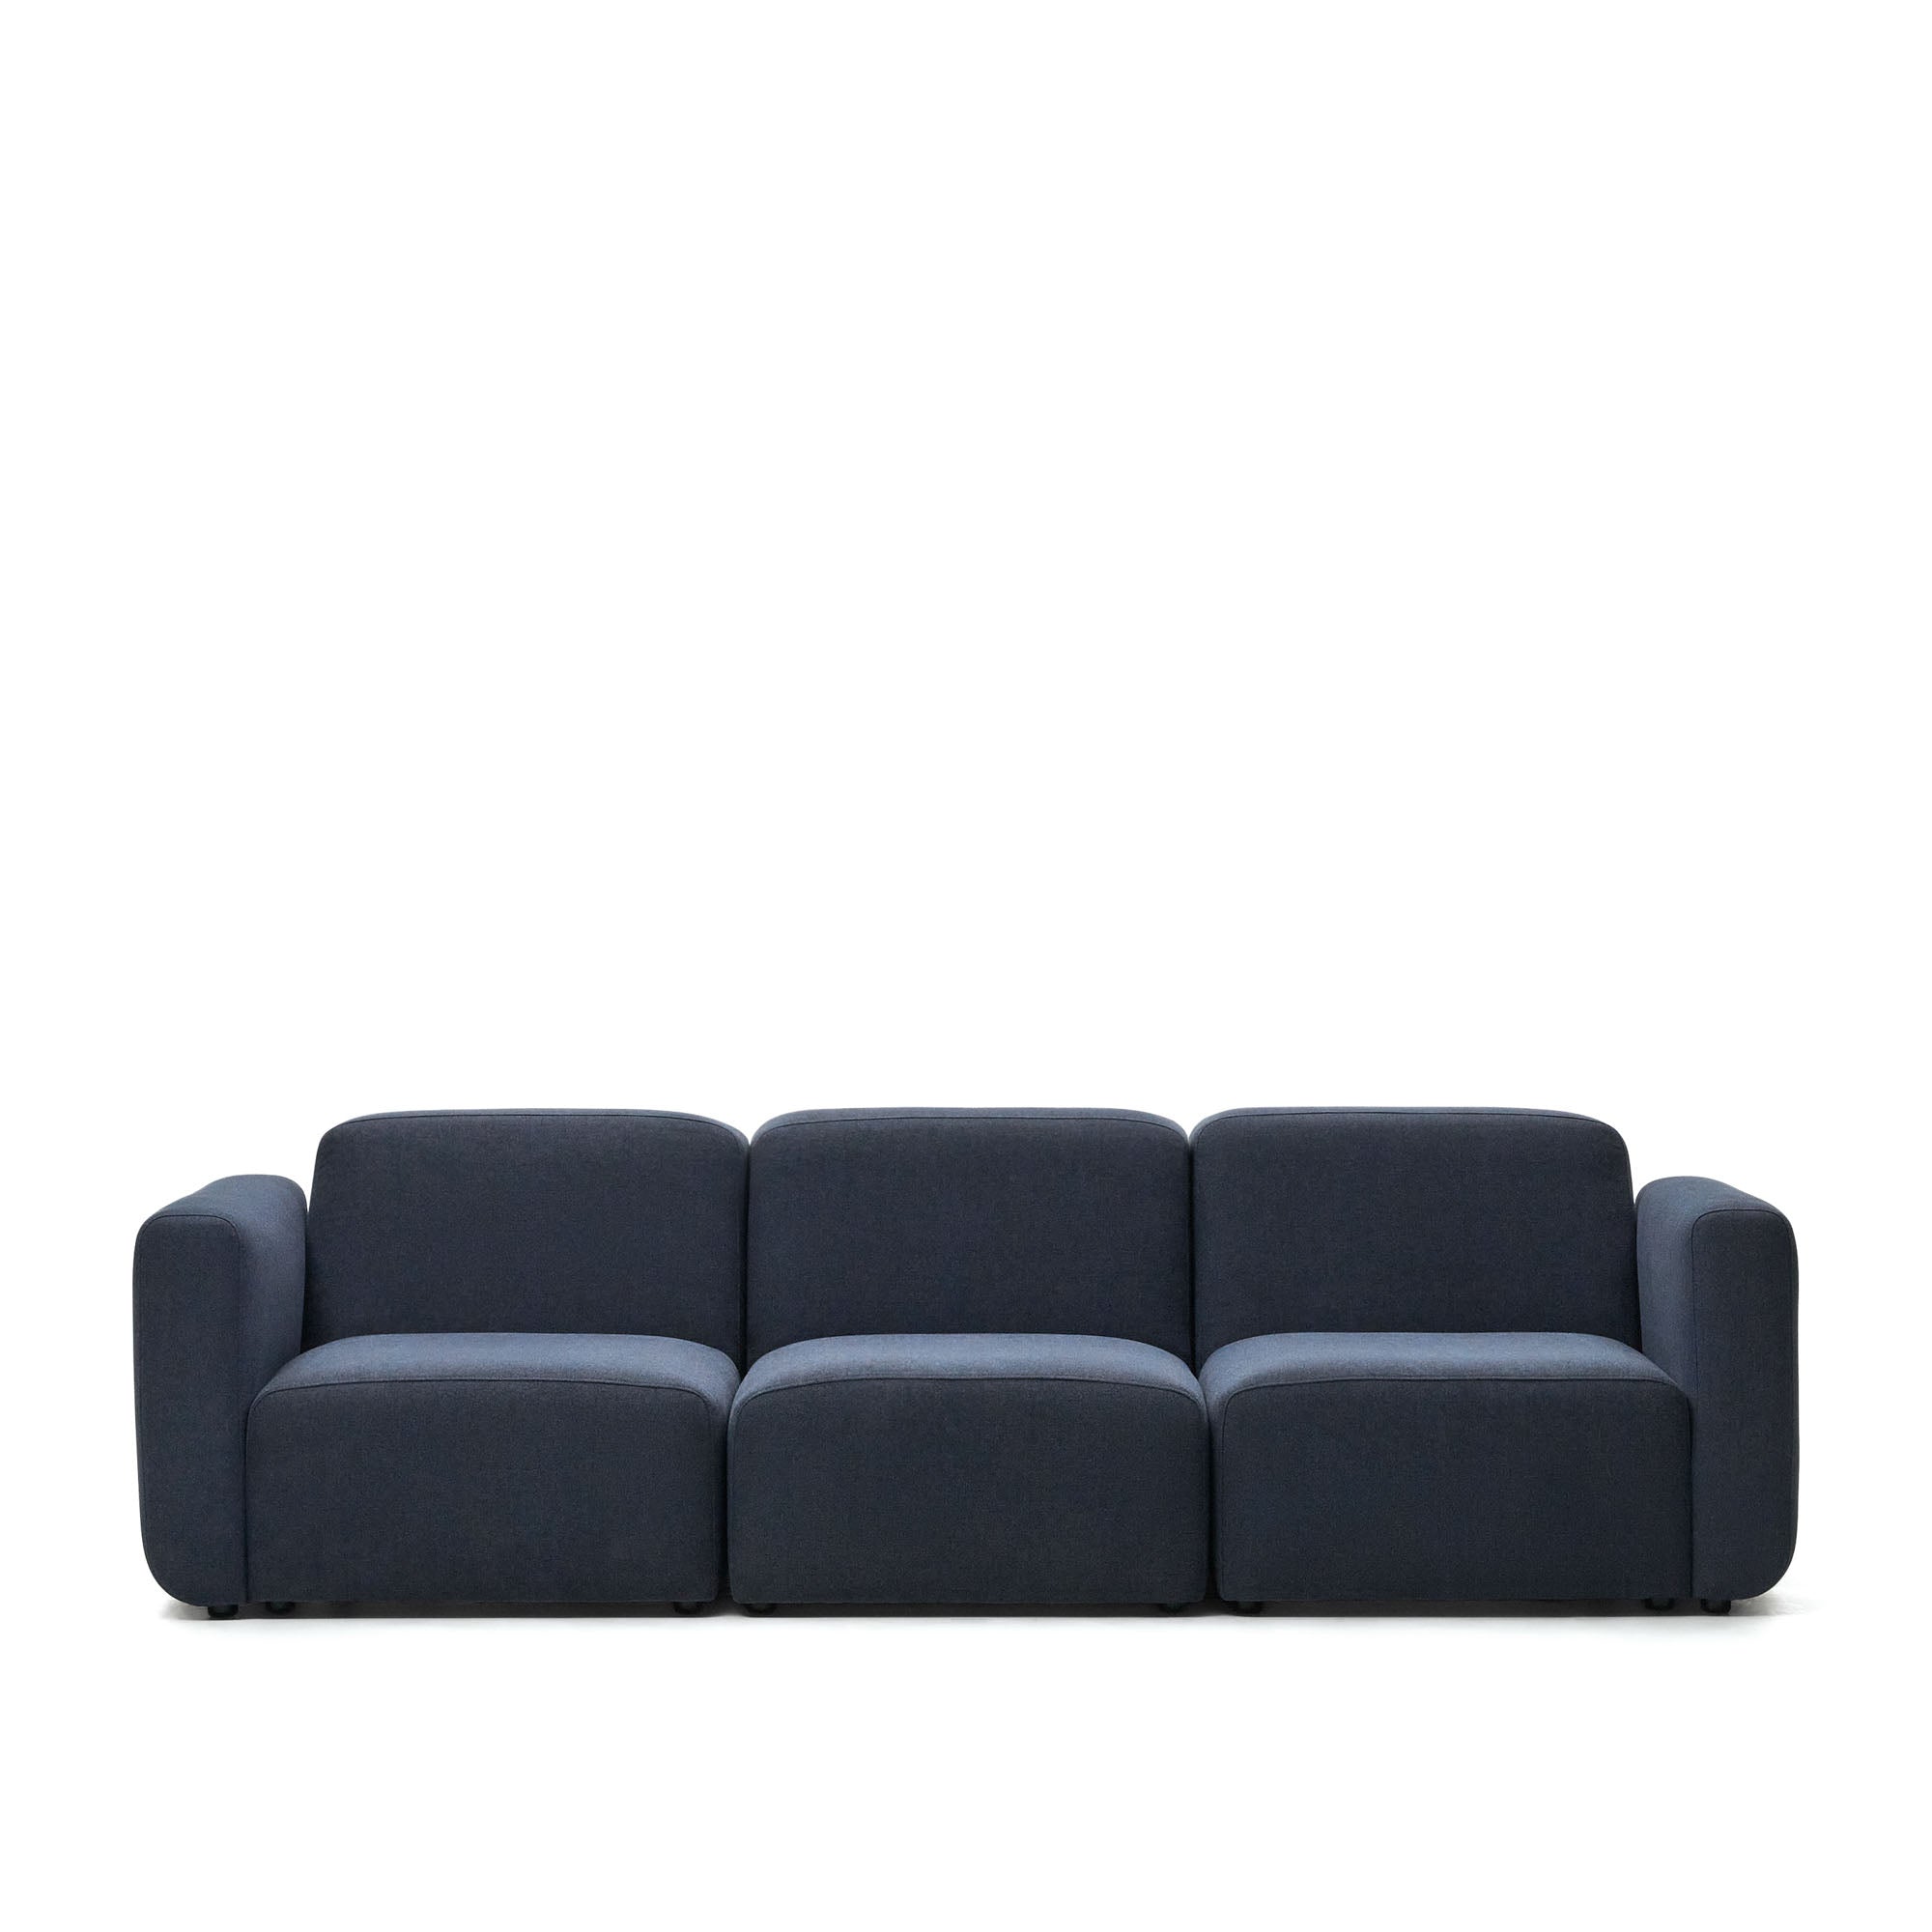 Neom 3 személyes moduláris kanapé kék színben, 263 cm